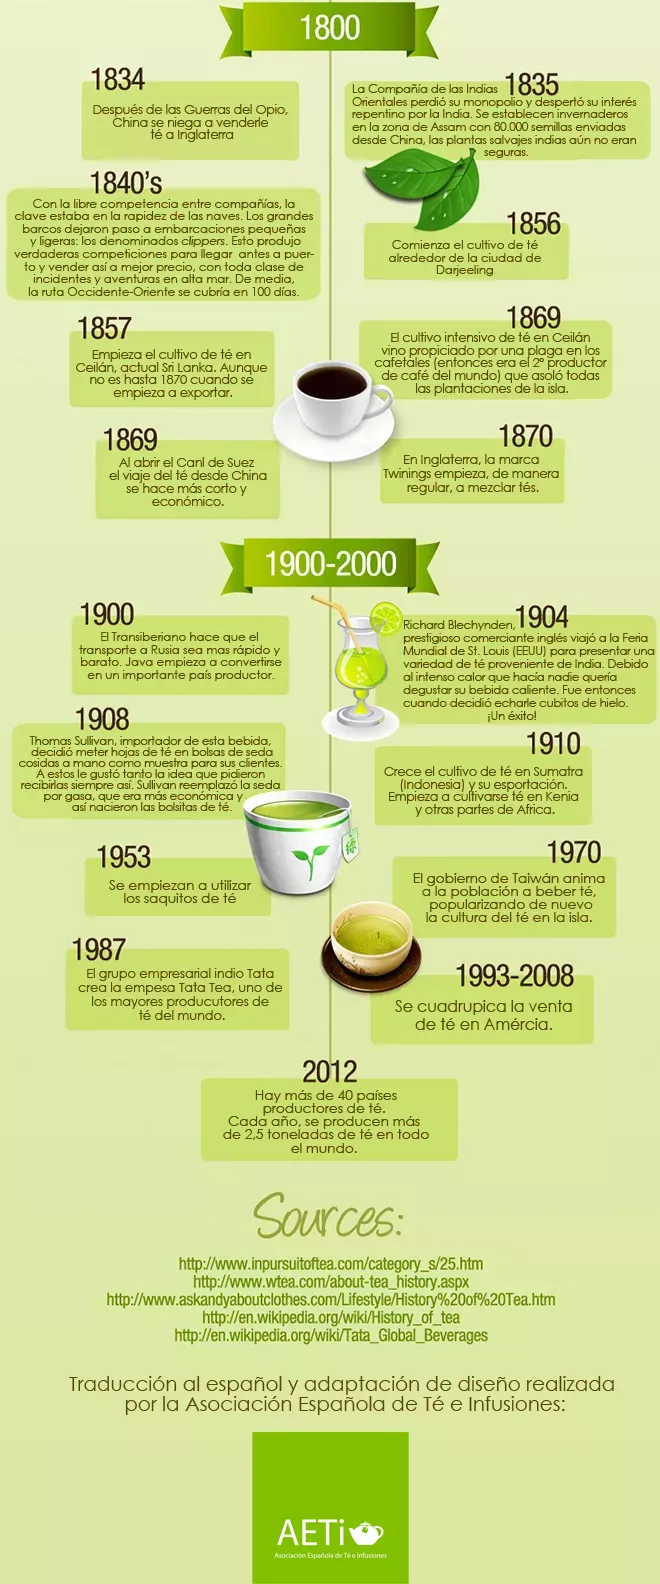 La Historia del té